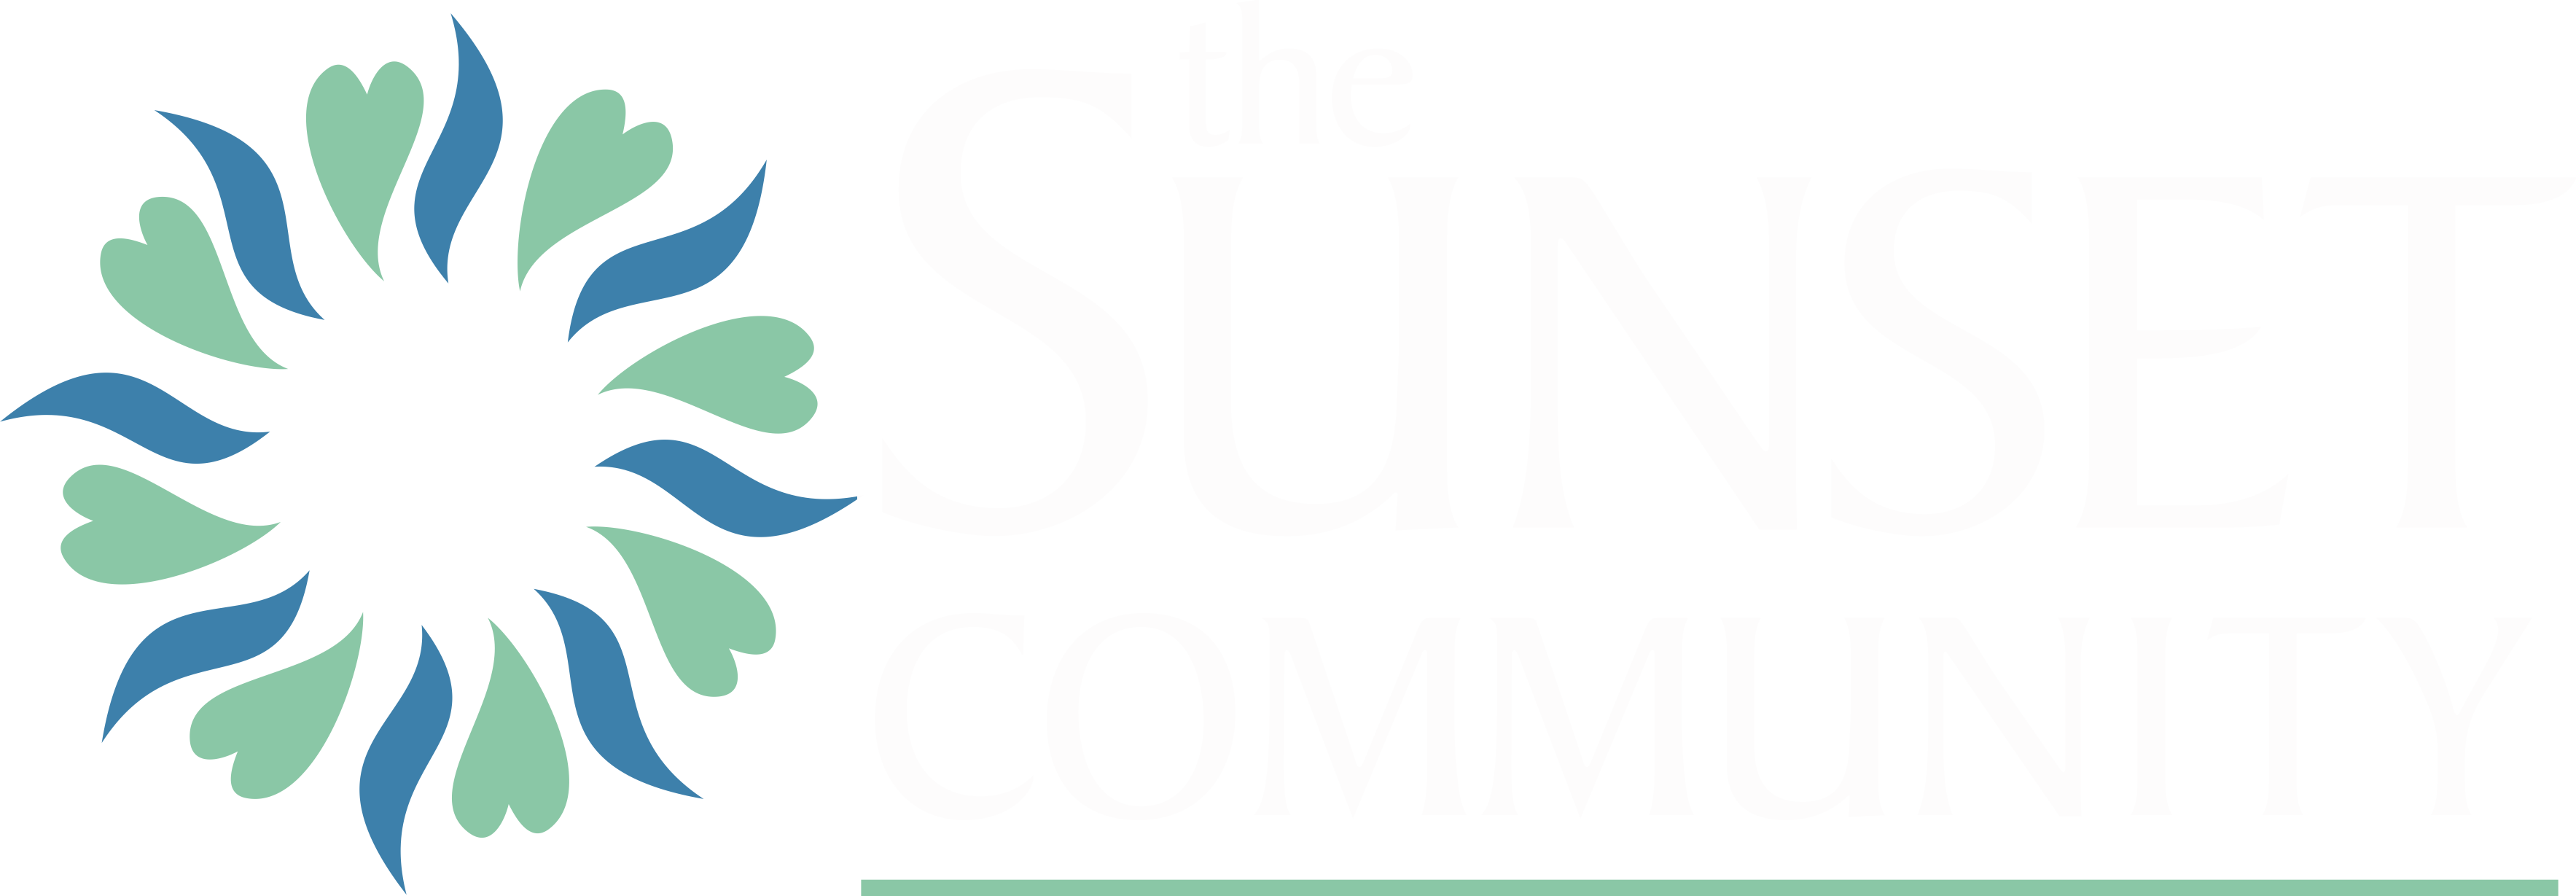 The Sunset Community Logo